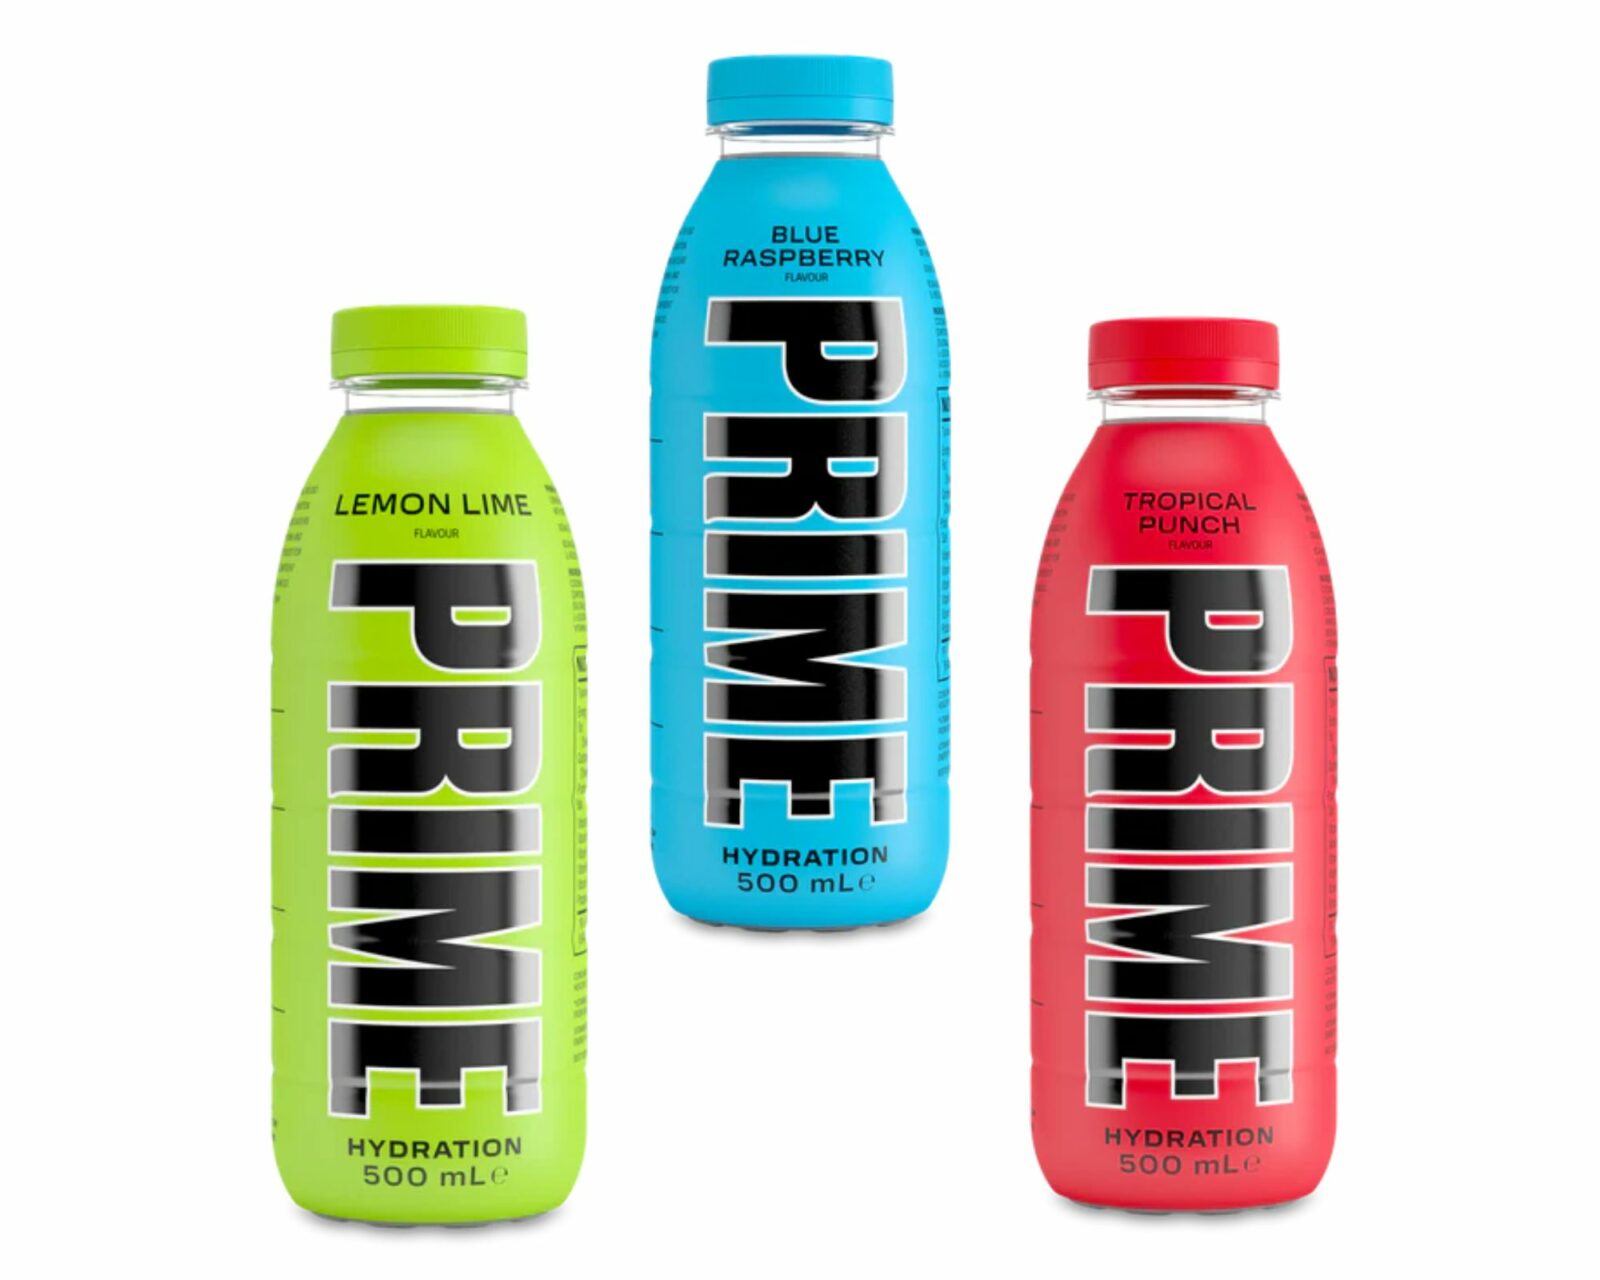 Prime Water Bottle - Blue Raspberry Design (1 bottle)